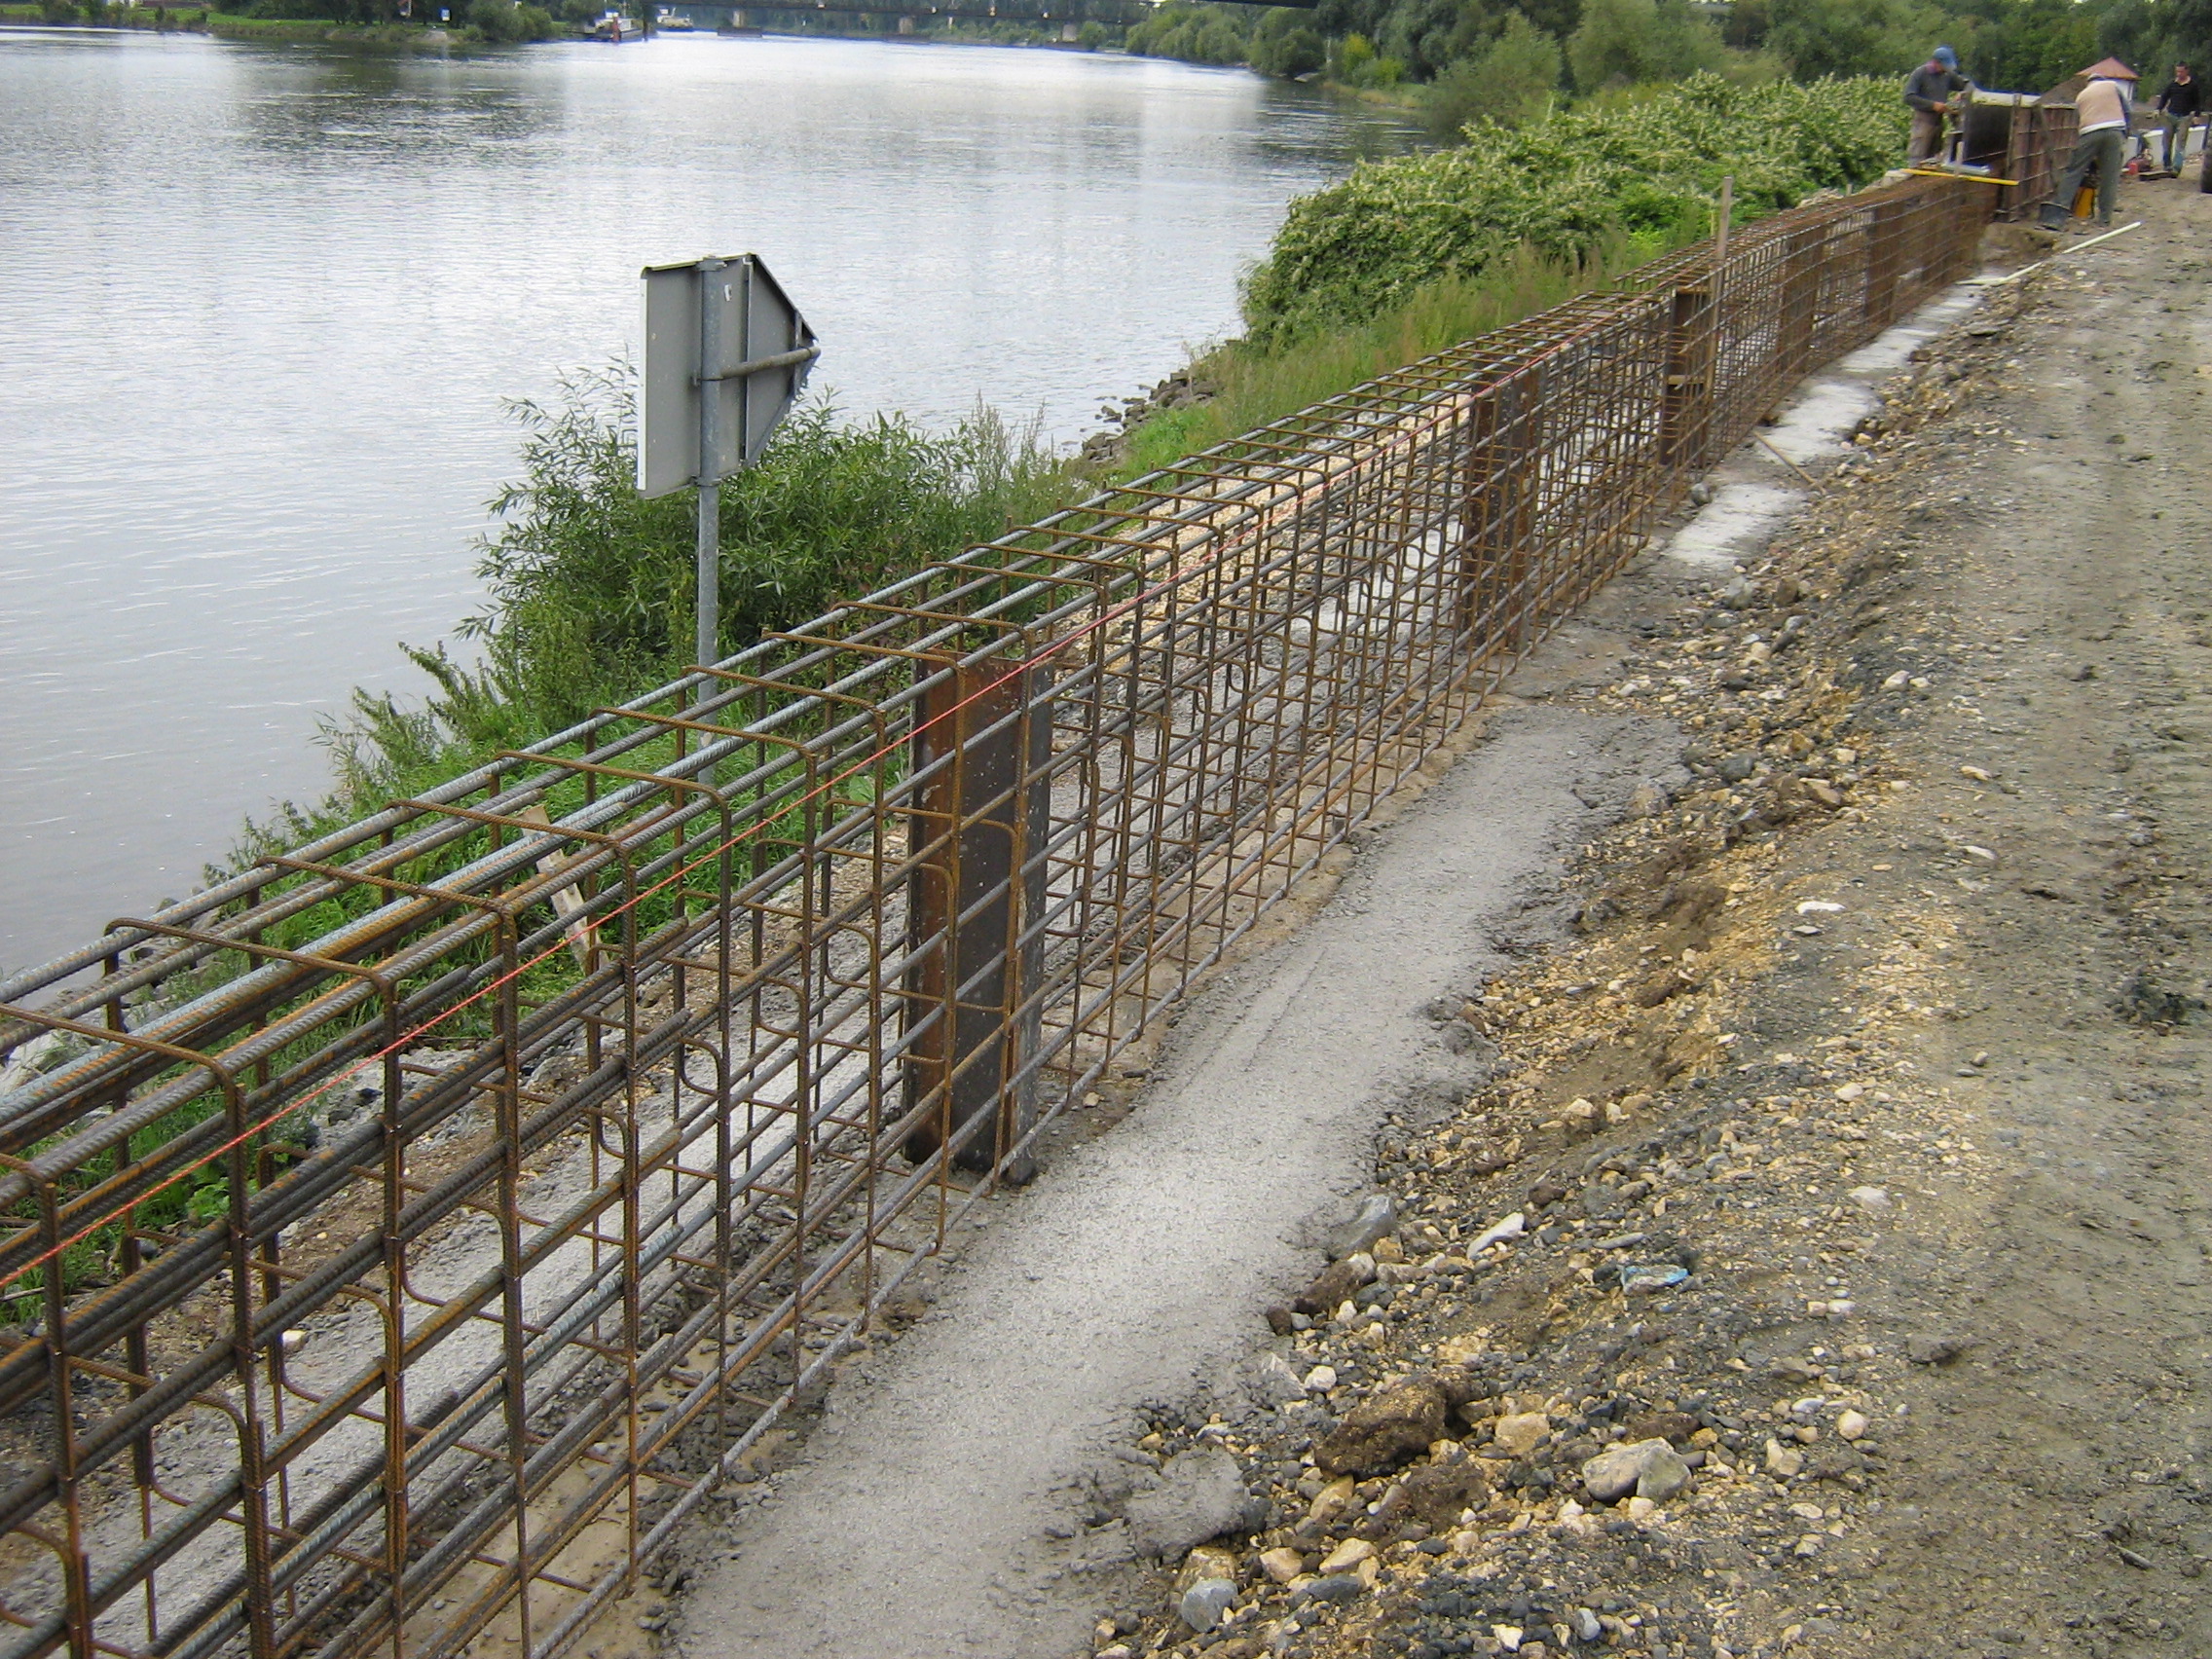 diagonal im Bild ein einbetoniertes Stahldrahtgeflecht in der Form einer Mauer, dahinter die Donau mit begrünter Böschung, rechts im Bild Füllmaterial, im Hintergrund Bauarbeiter